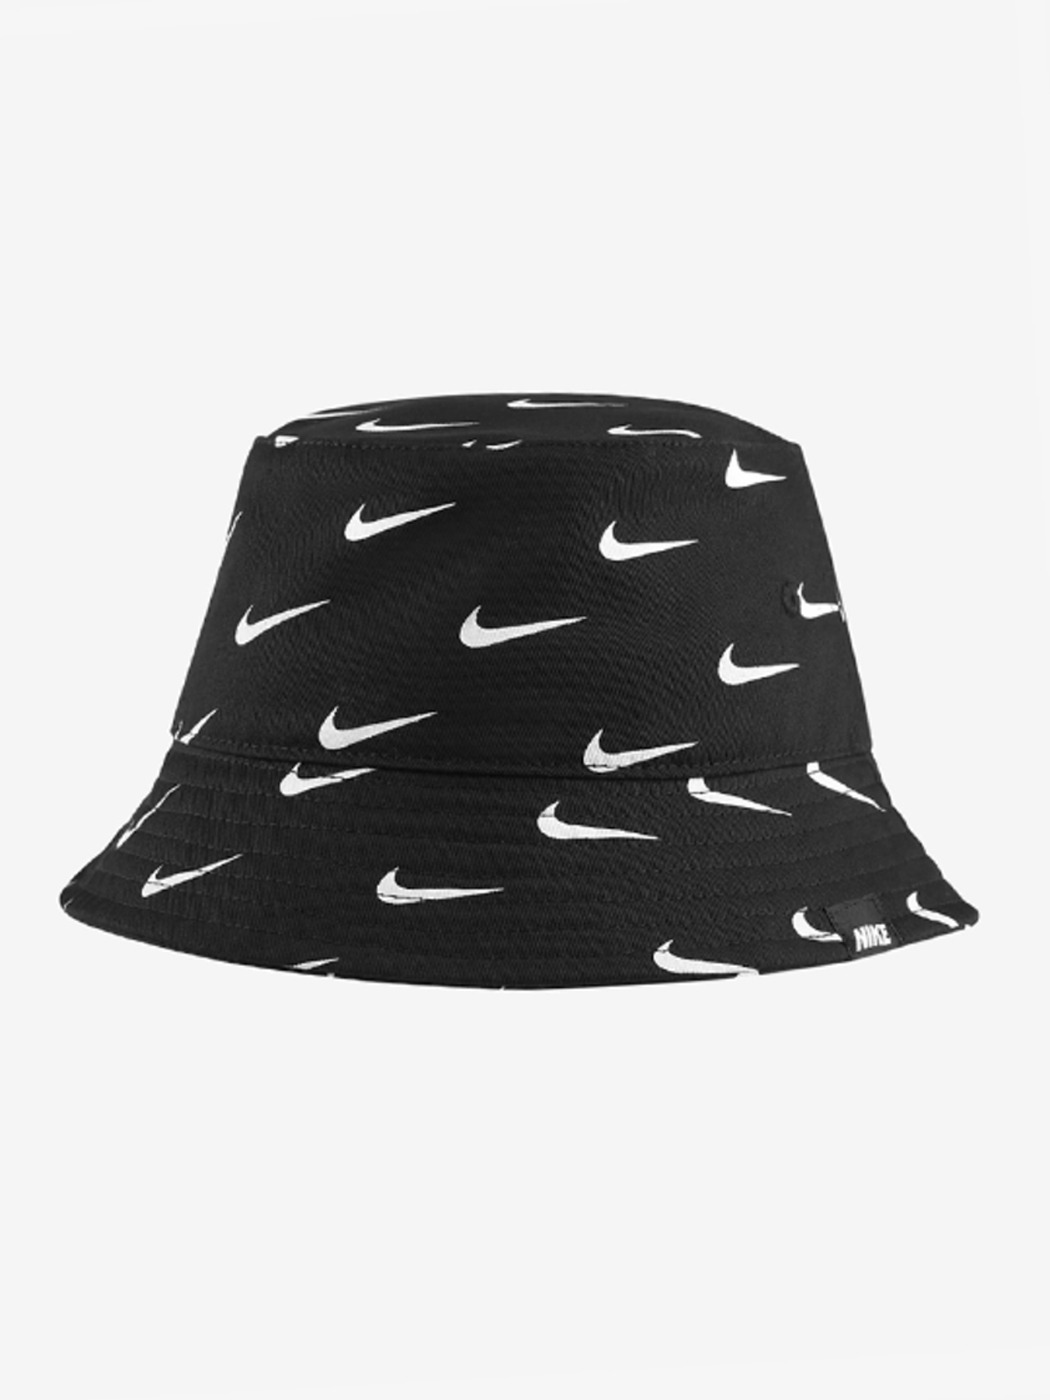 Nike Little Kids Bucket Hat Black